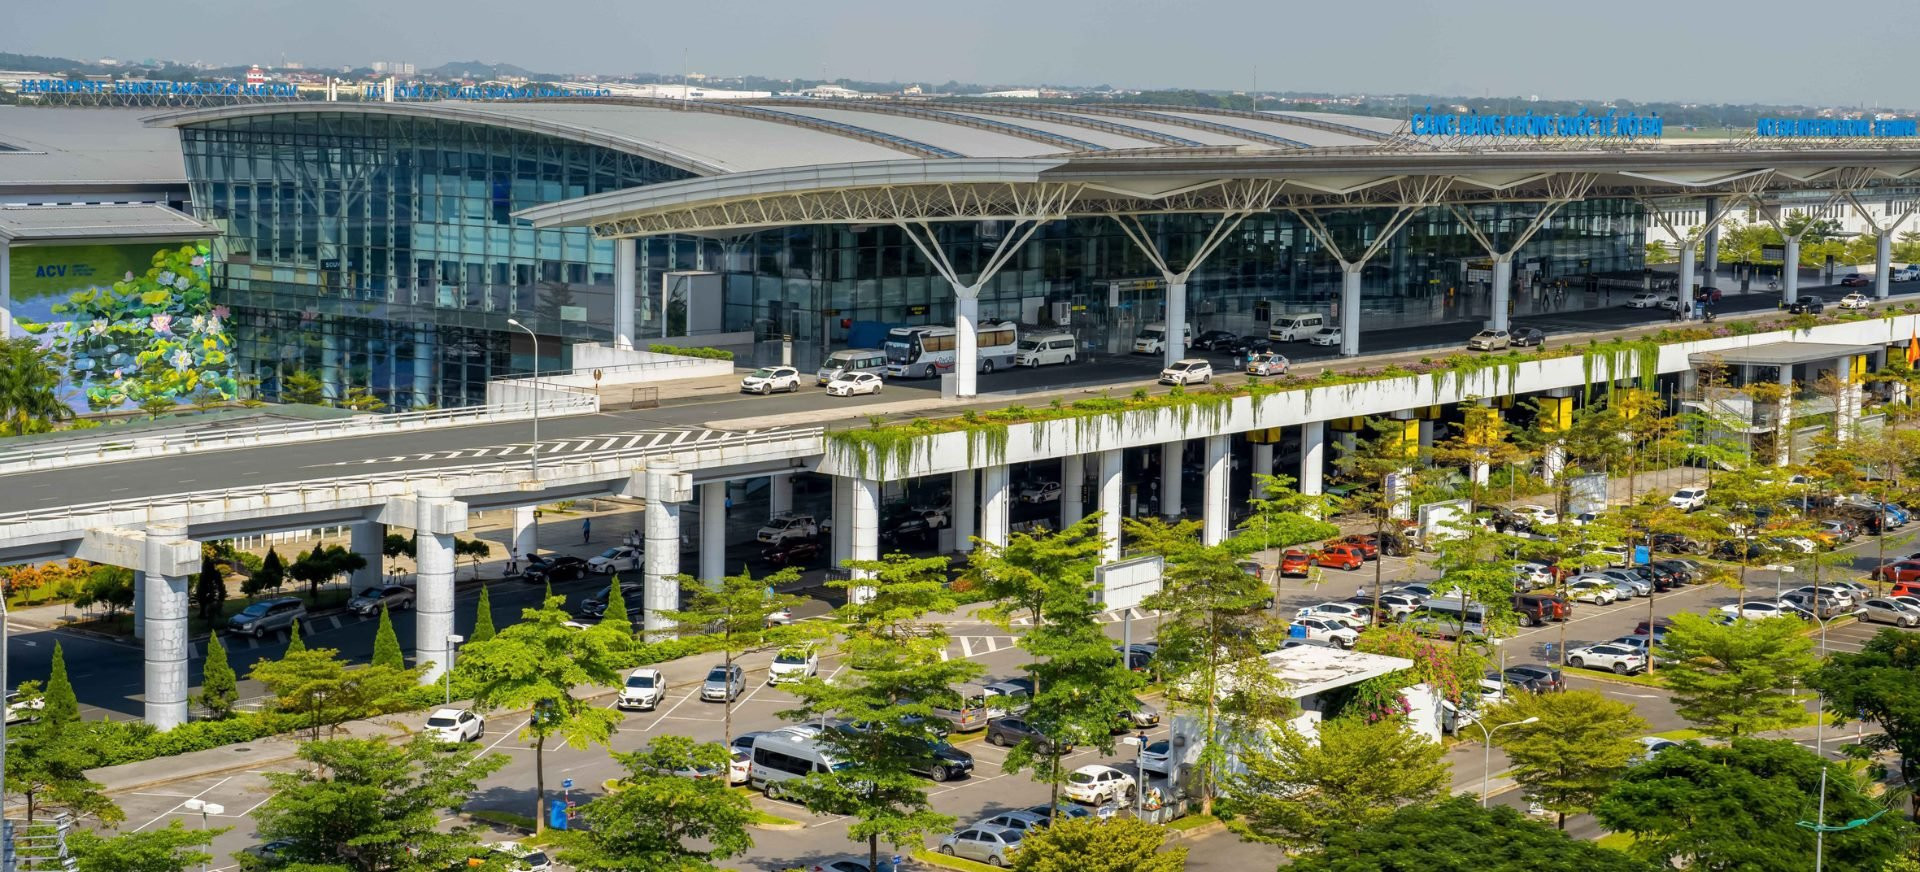 Bất ngờ trâu xuất hiện tại nhà ga sân bay Nội Bài   - Ảnh 2.